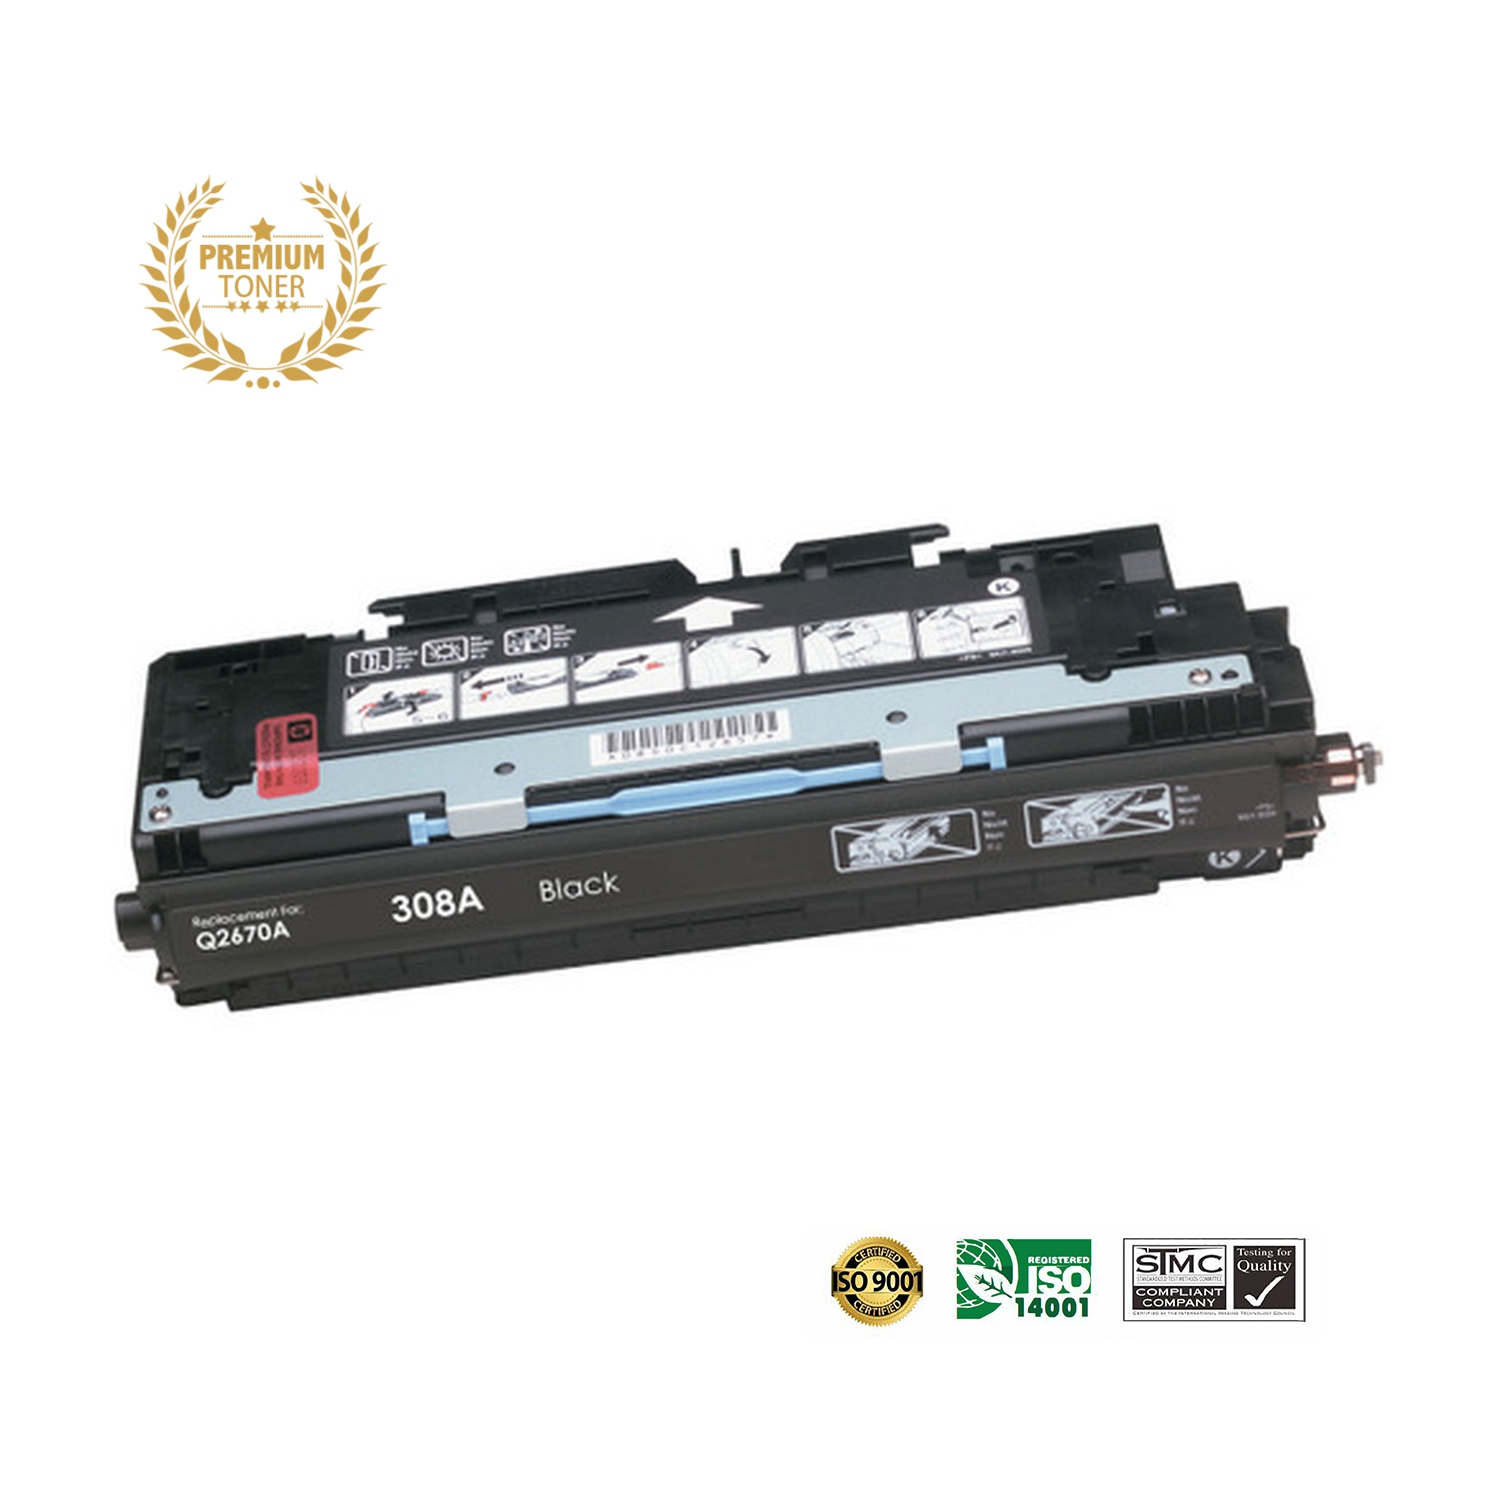 Ultra Toner™ Superior HP 308A (Q2670A) Black Toner Cartridge Premium Quality！